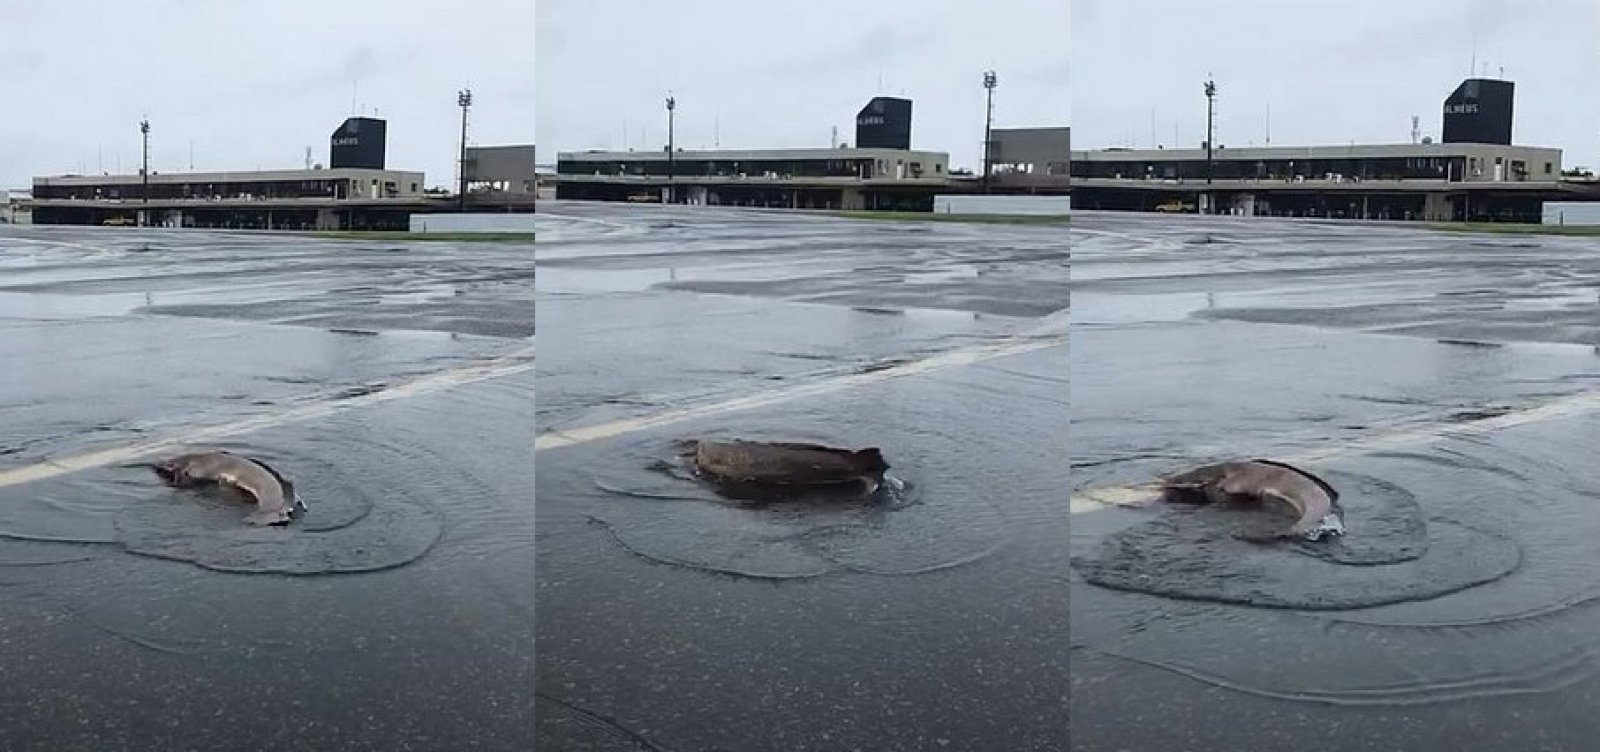 Após enchentes, peixes são vistos no aeroporto de Ilhéus - Metro 1